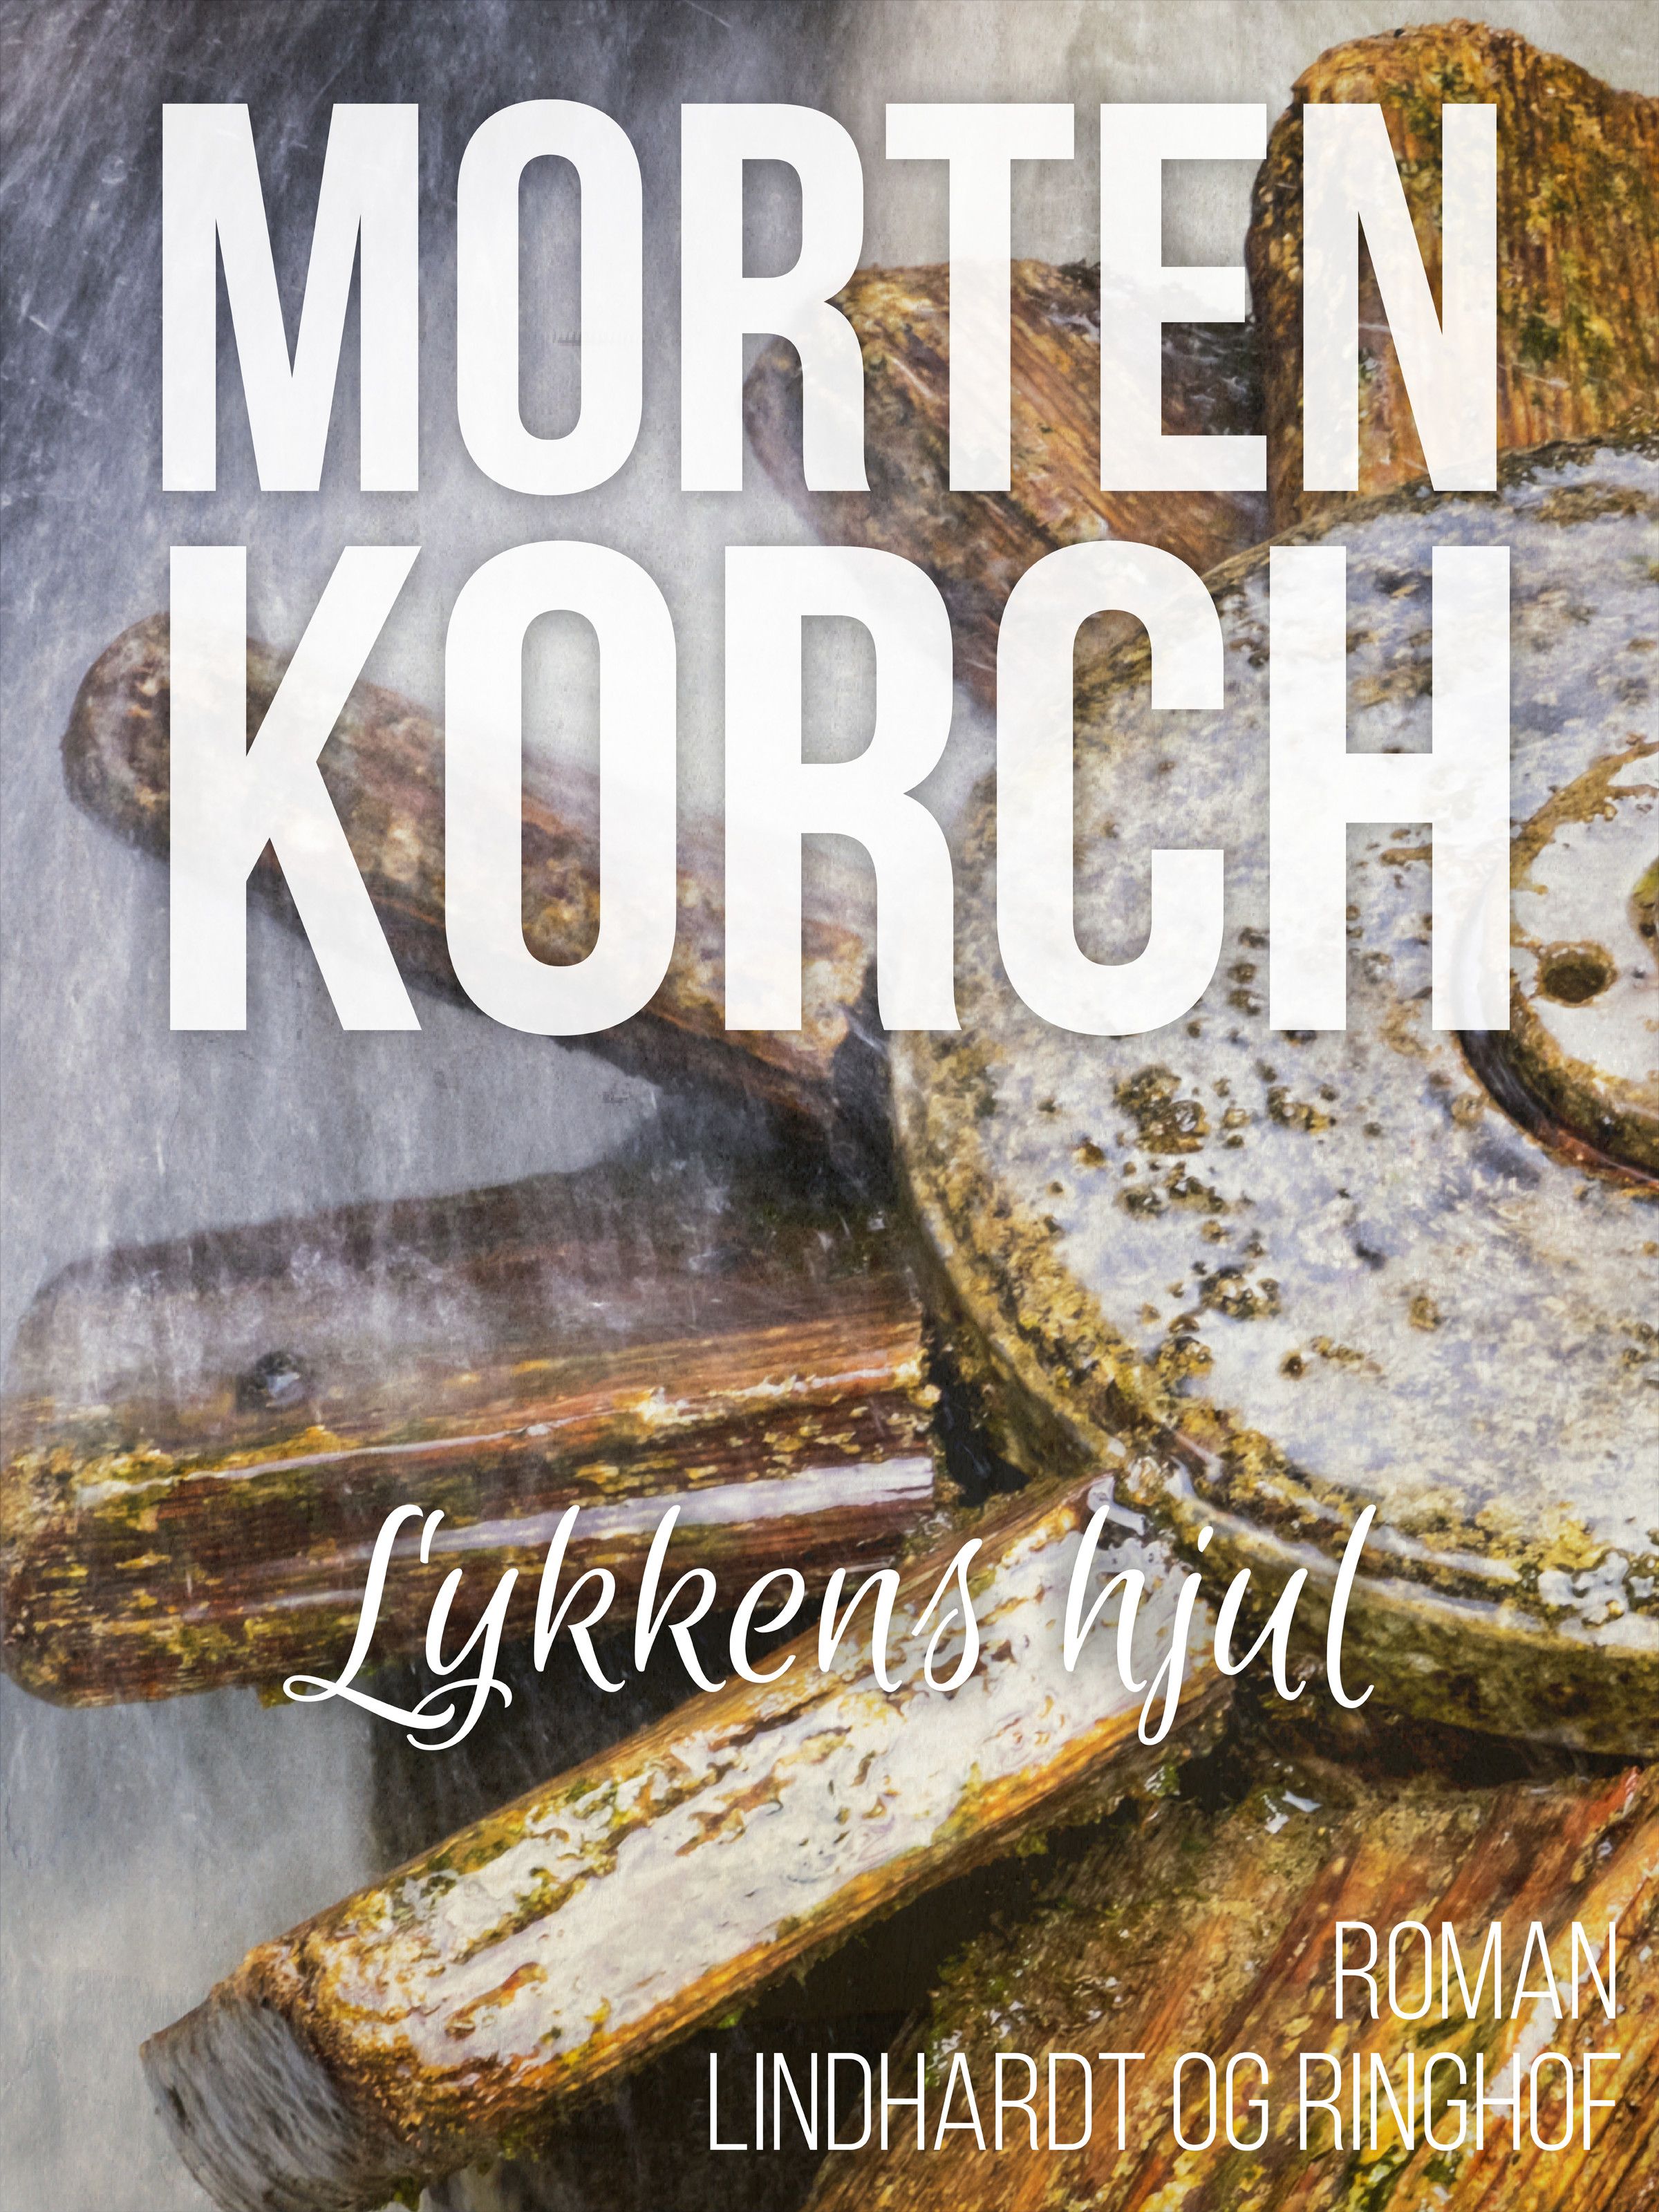 Lykkens hjul, lydbog af Morten Korch